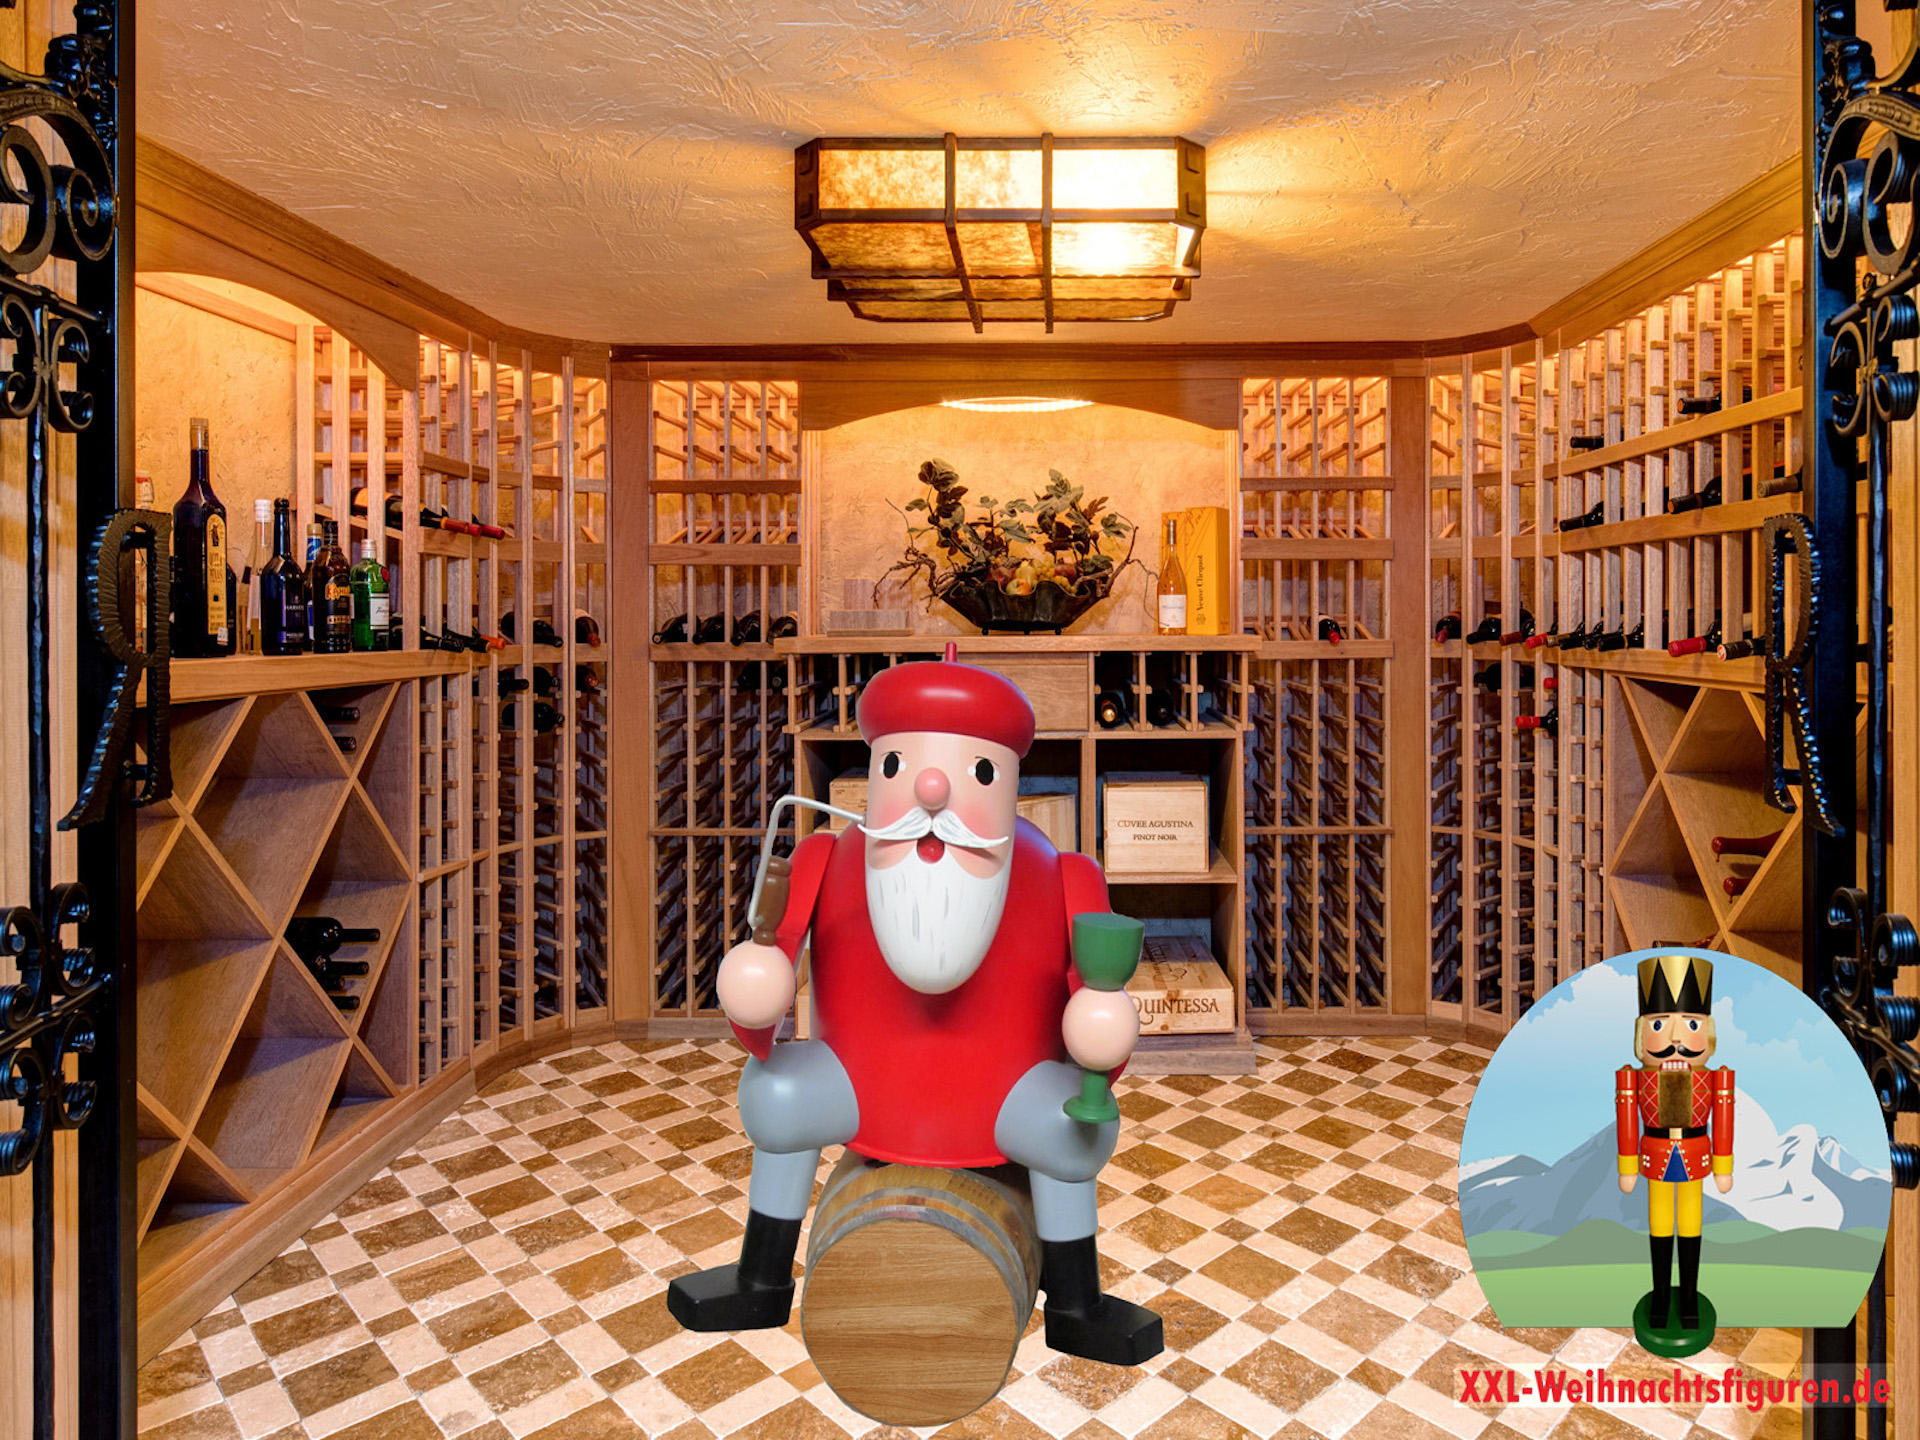 Auf dem Foto sieht man eine sehr große Weihnachtsfigur. Es handelt sich um einen lebensgroße Räuchermann, der auf einem Weinfass sitzt.